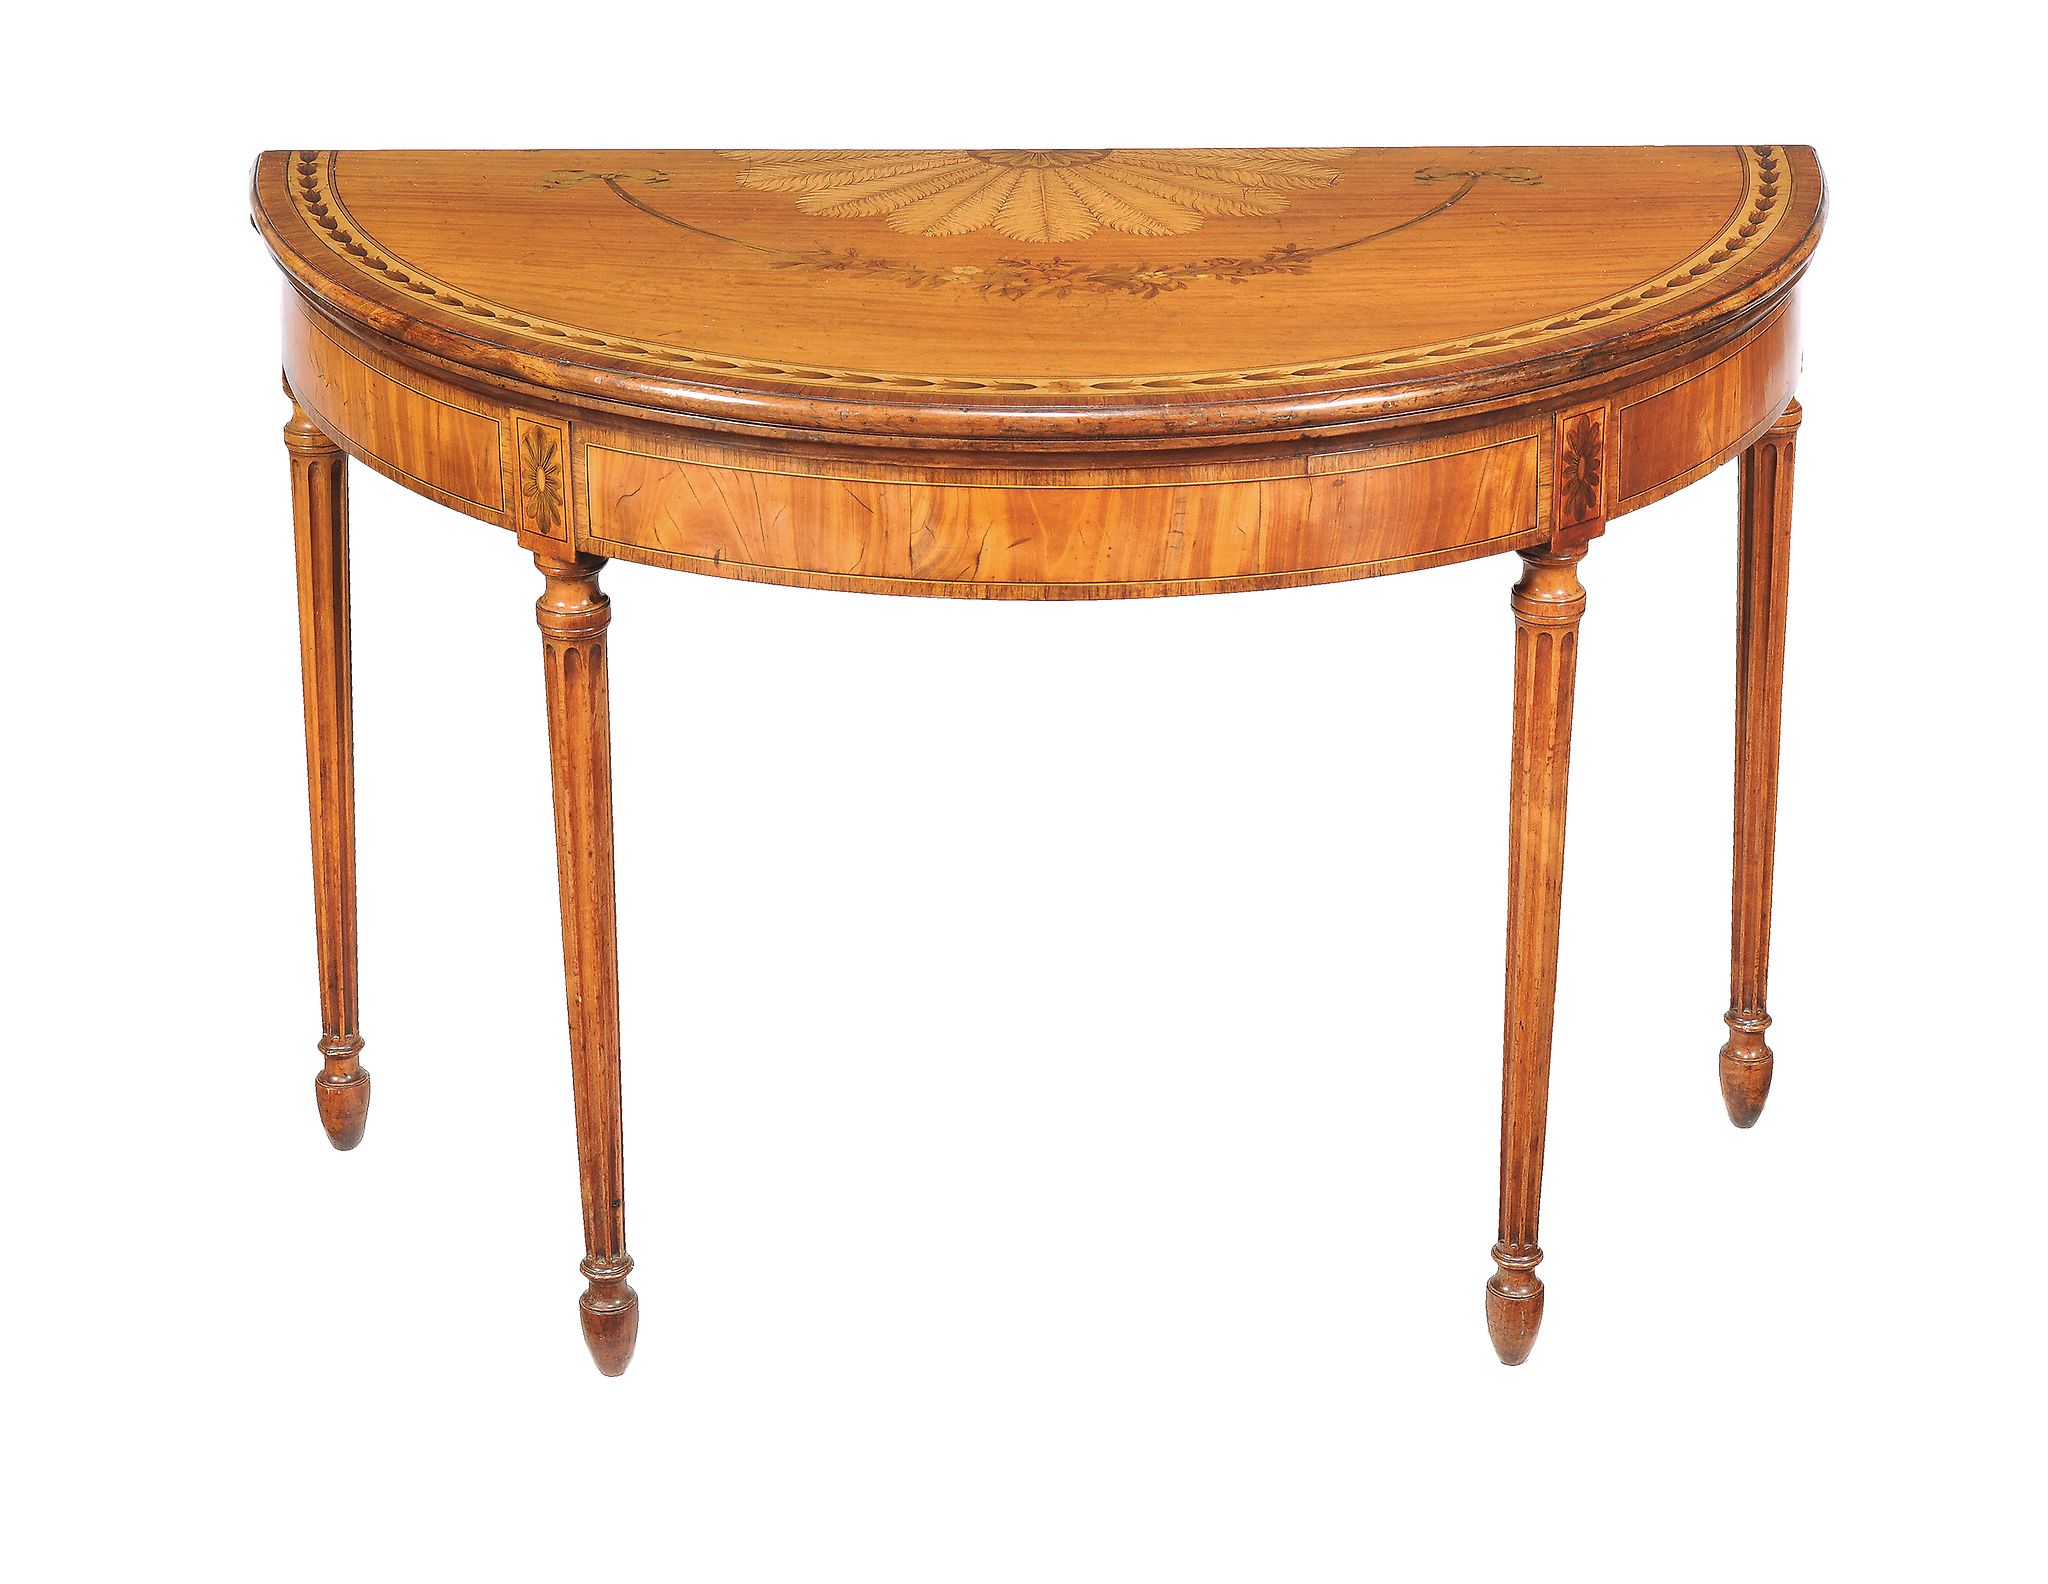 Ω A George III satinwood and marquetry semi eliptical folding card table, circa 1810, kingwood and